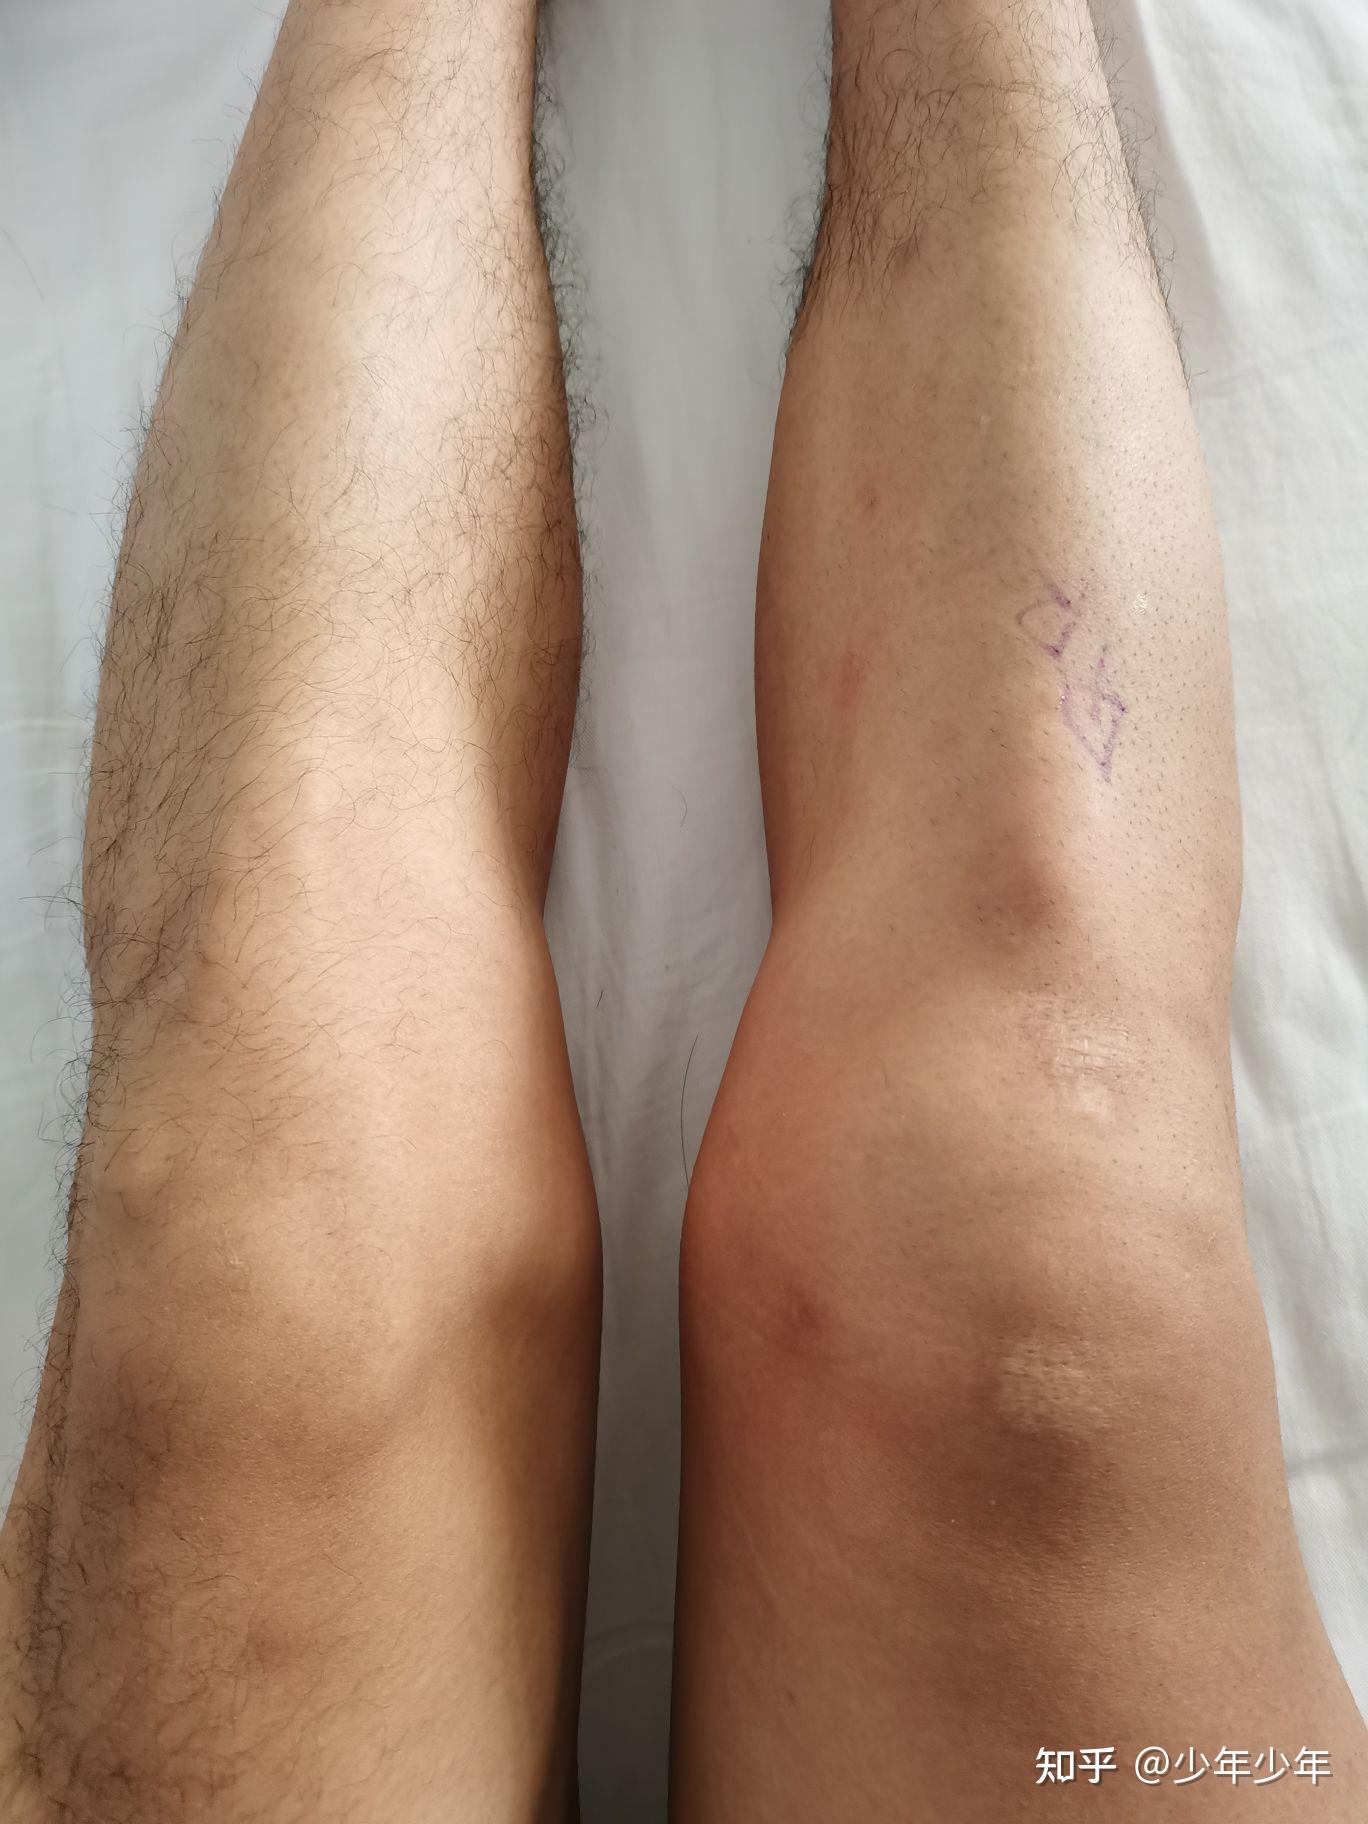 断腿少年—记前叉韧带断裂经历 